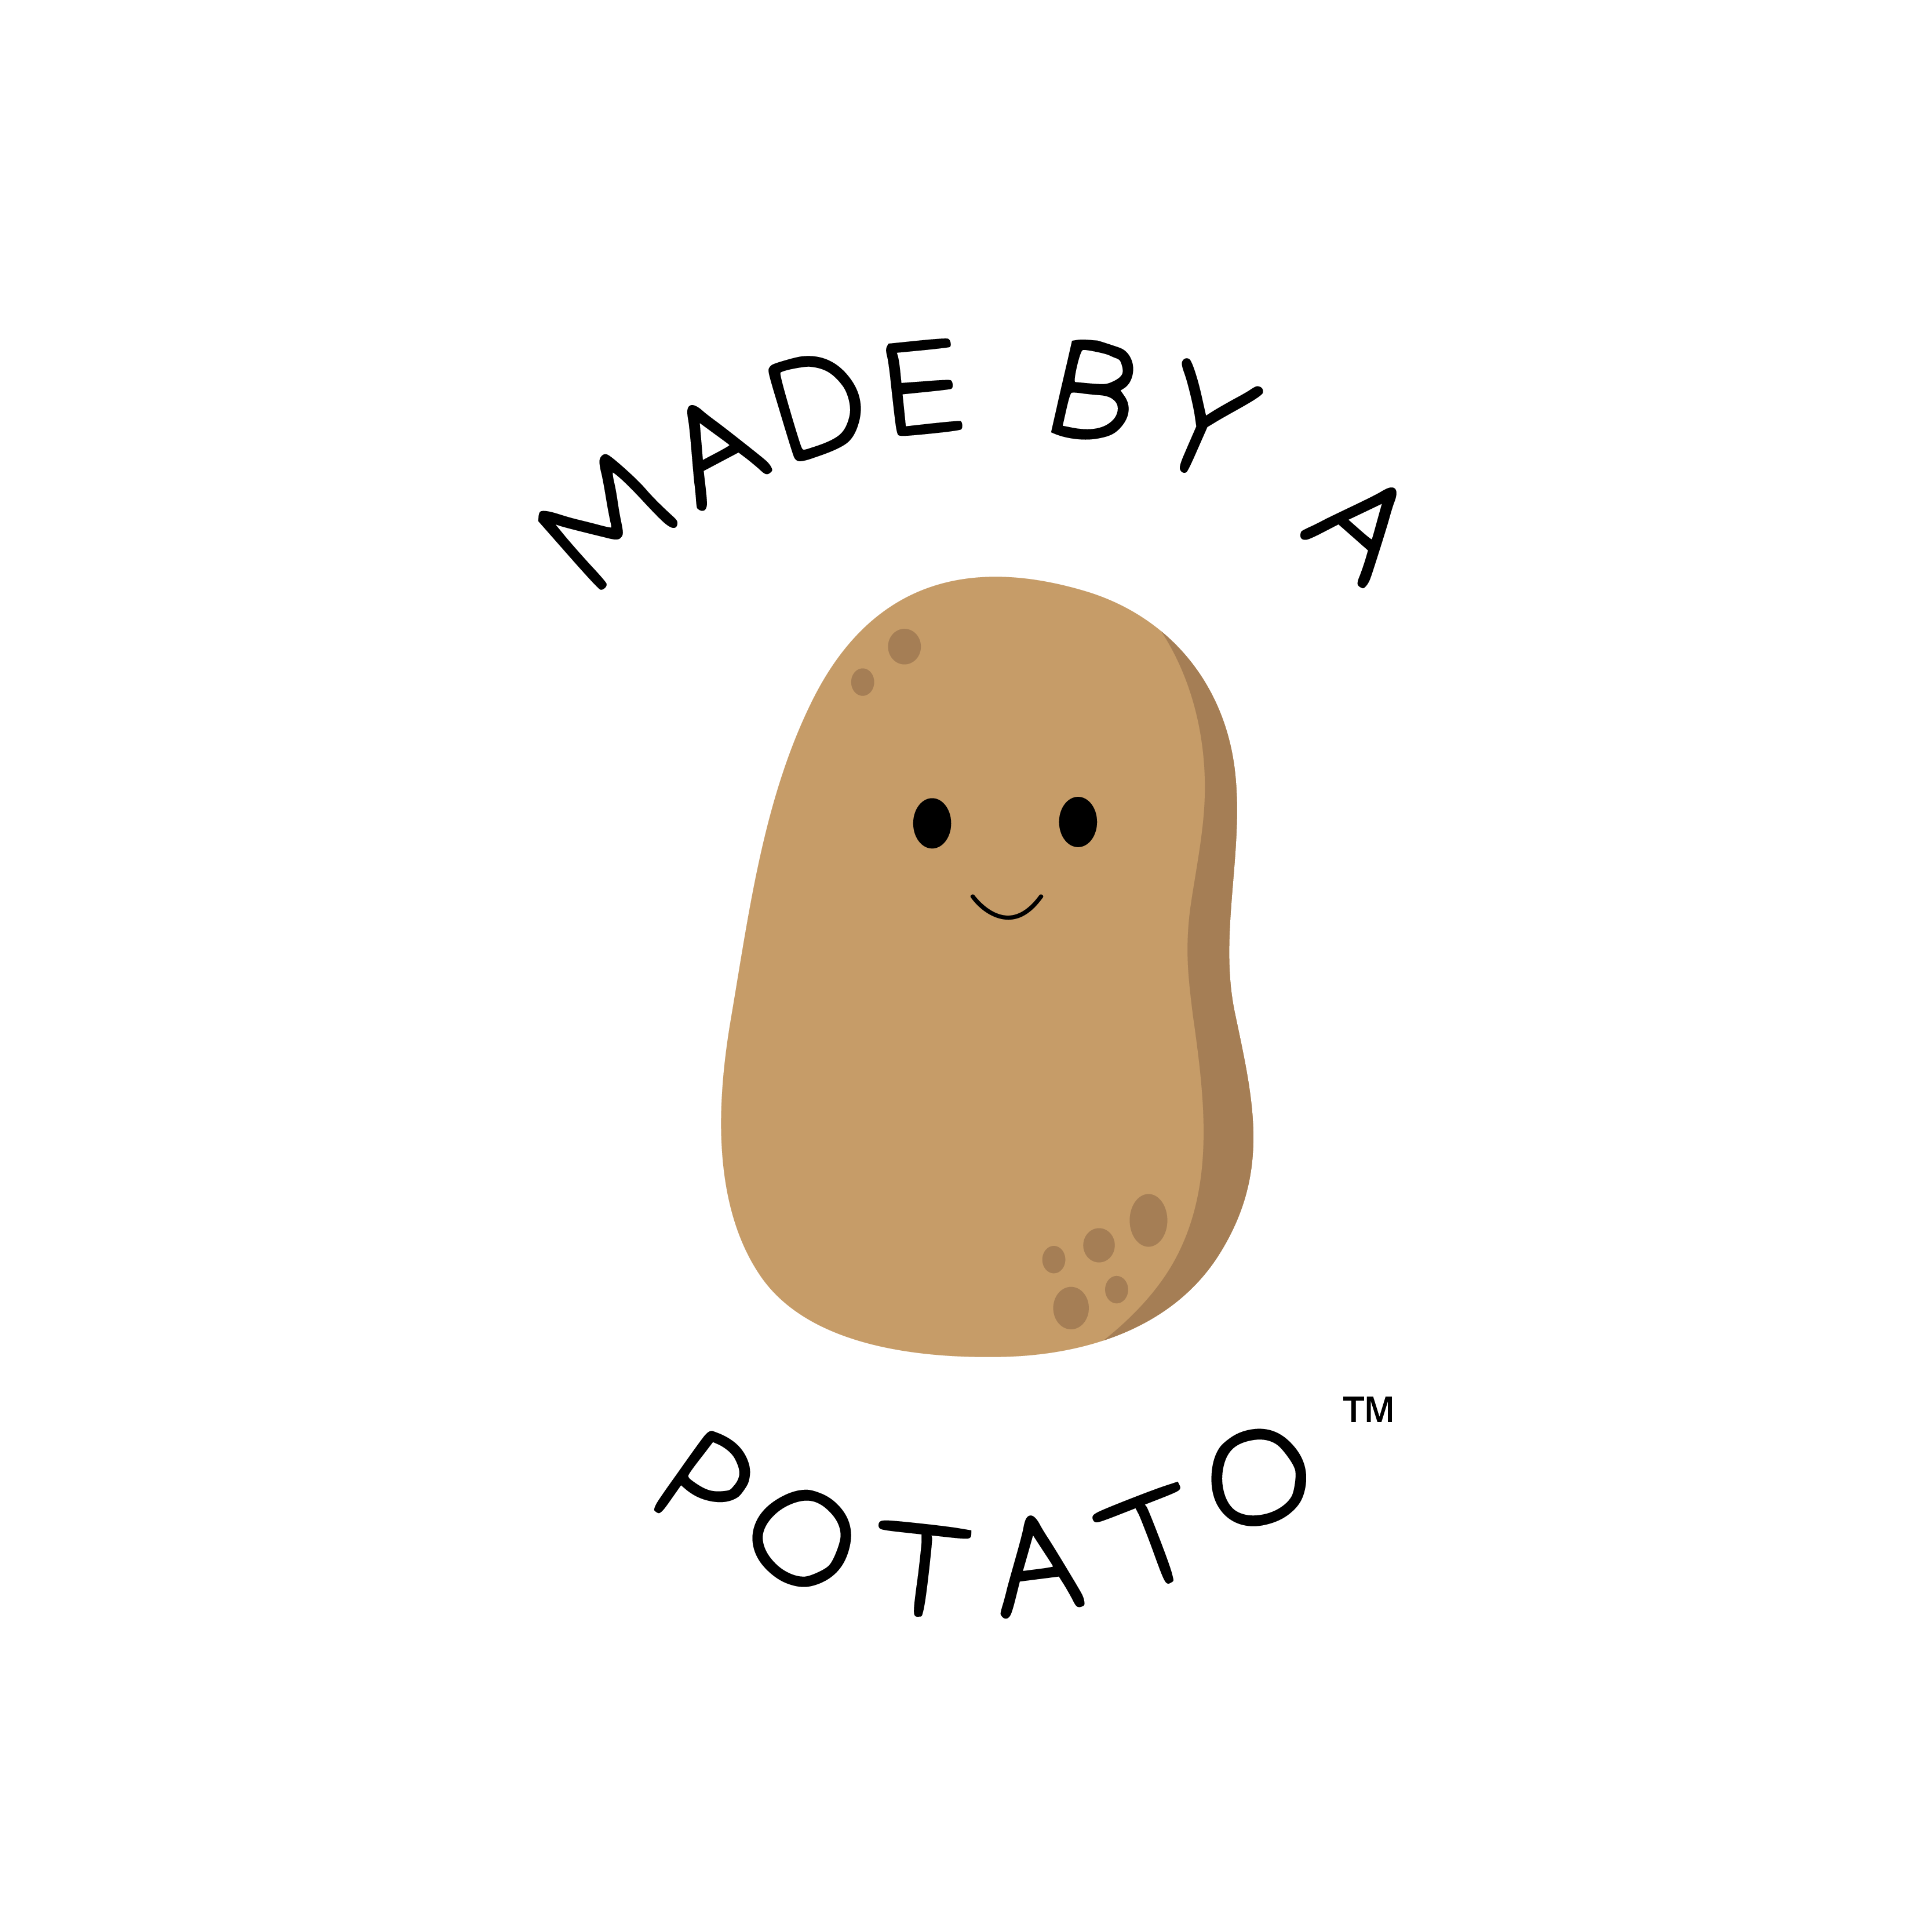 Birthday – Made by a Potato